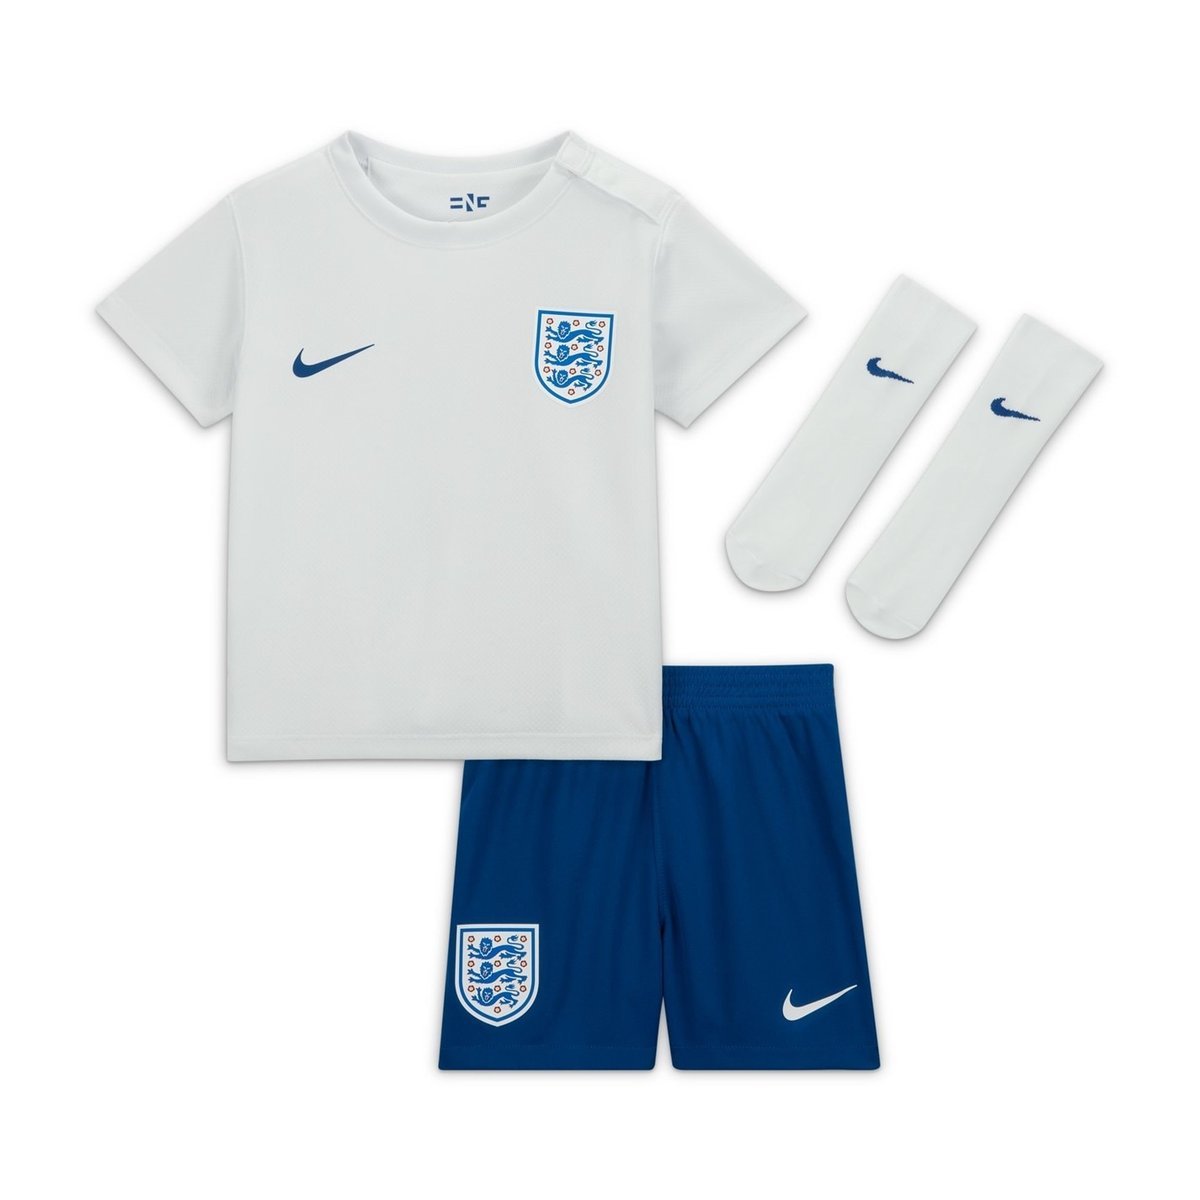 england football shirts for sale